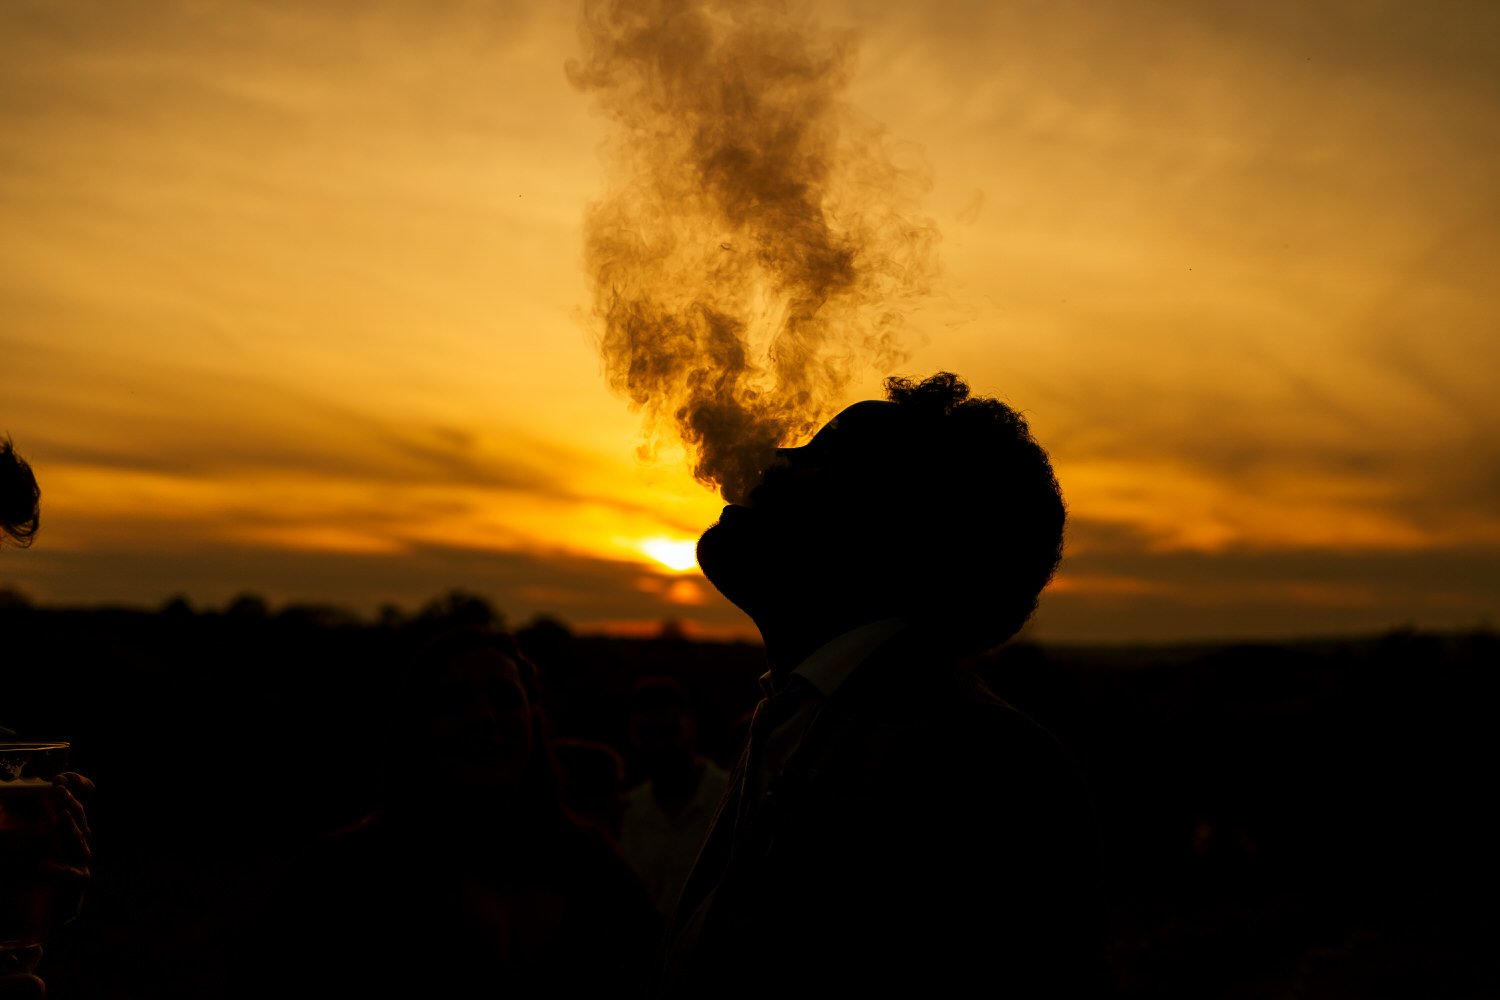 smoke silhouette